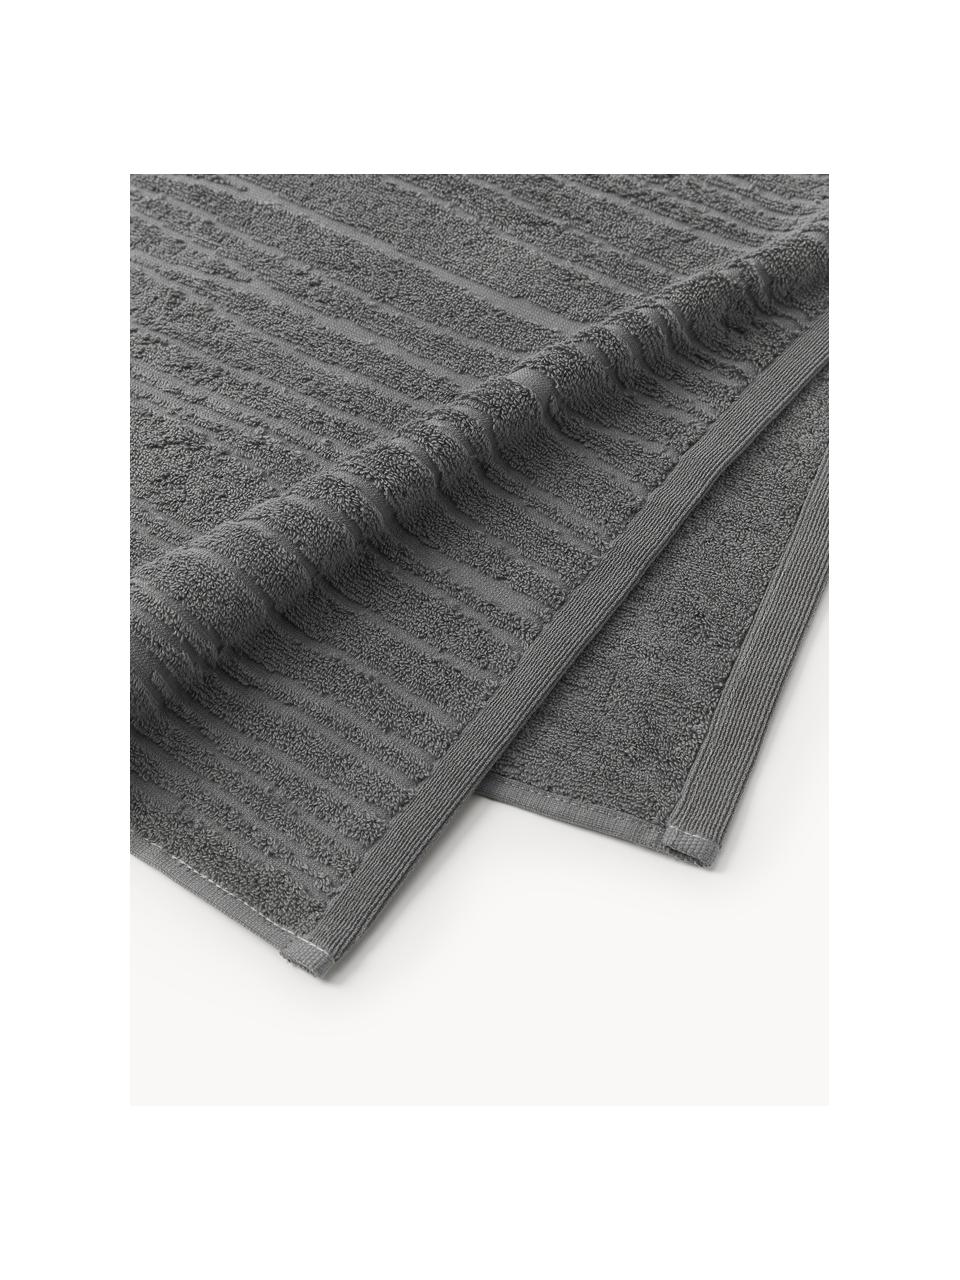 Baumwoll-Handtuch Audrina, in verschiedenen Größen, Dunkelgrau, Handtuch, B 50 x L 100 cm, 2 Stück